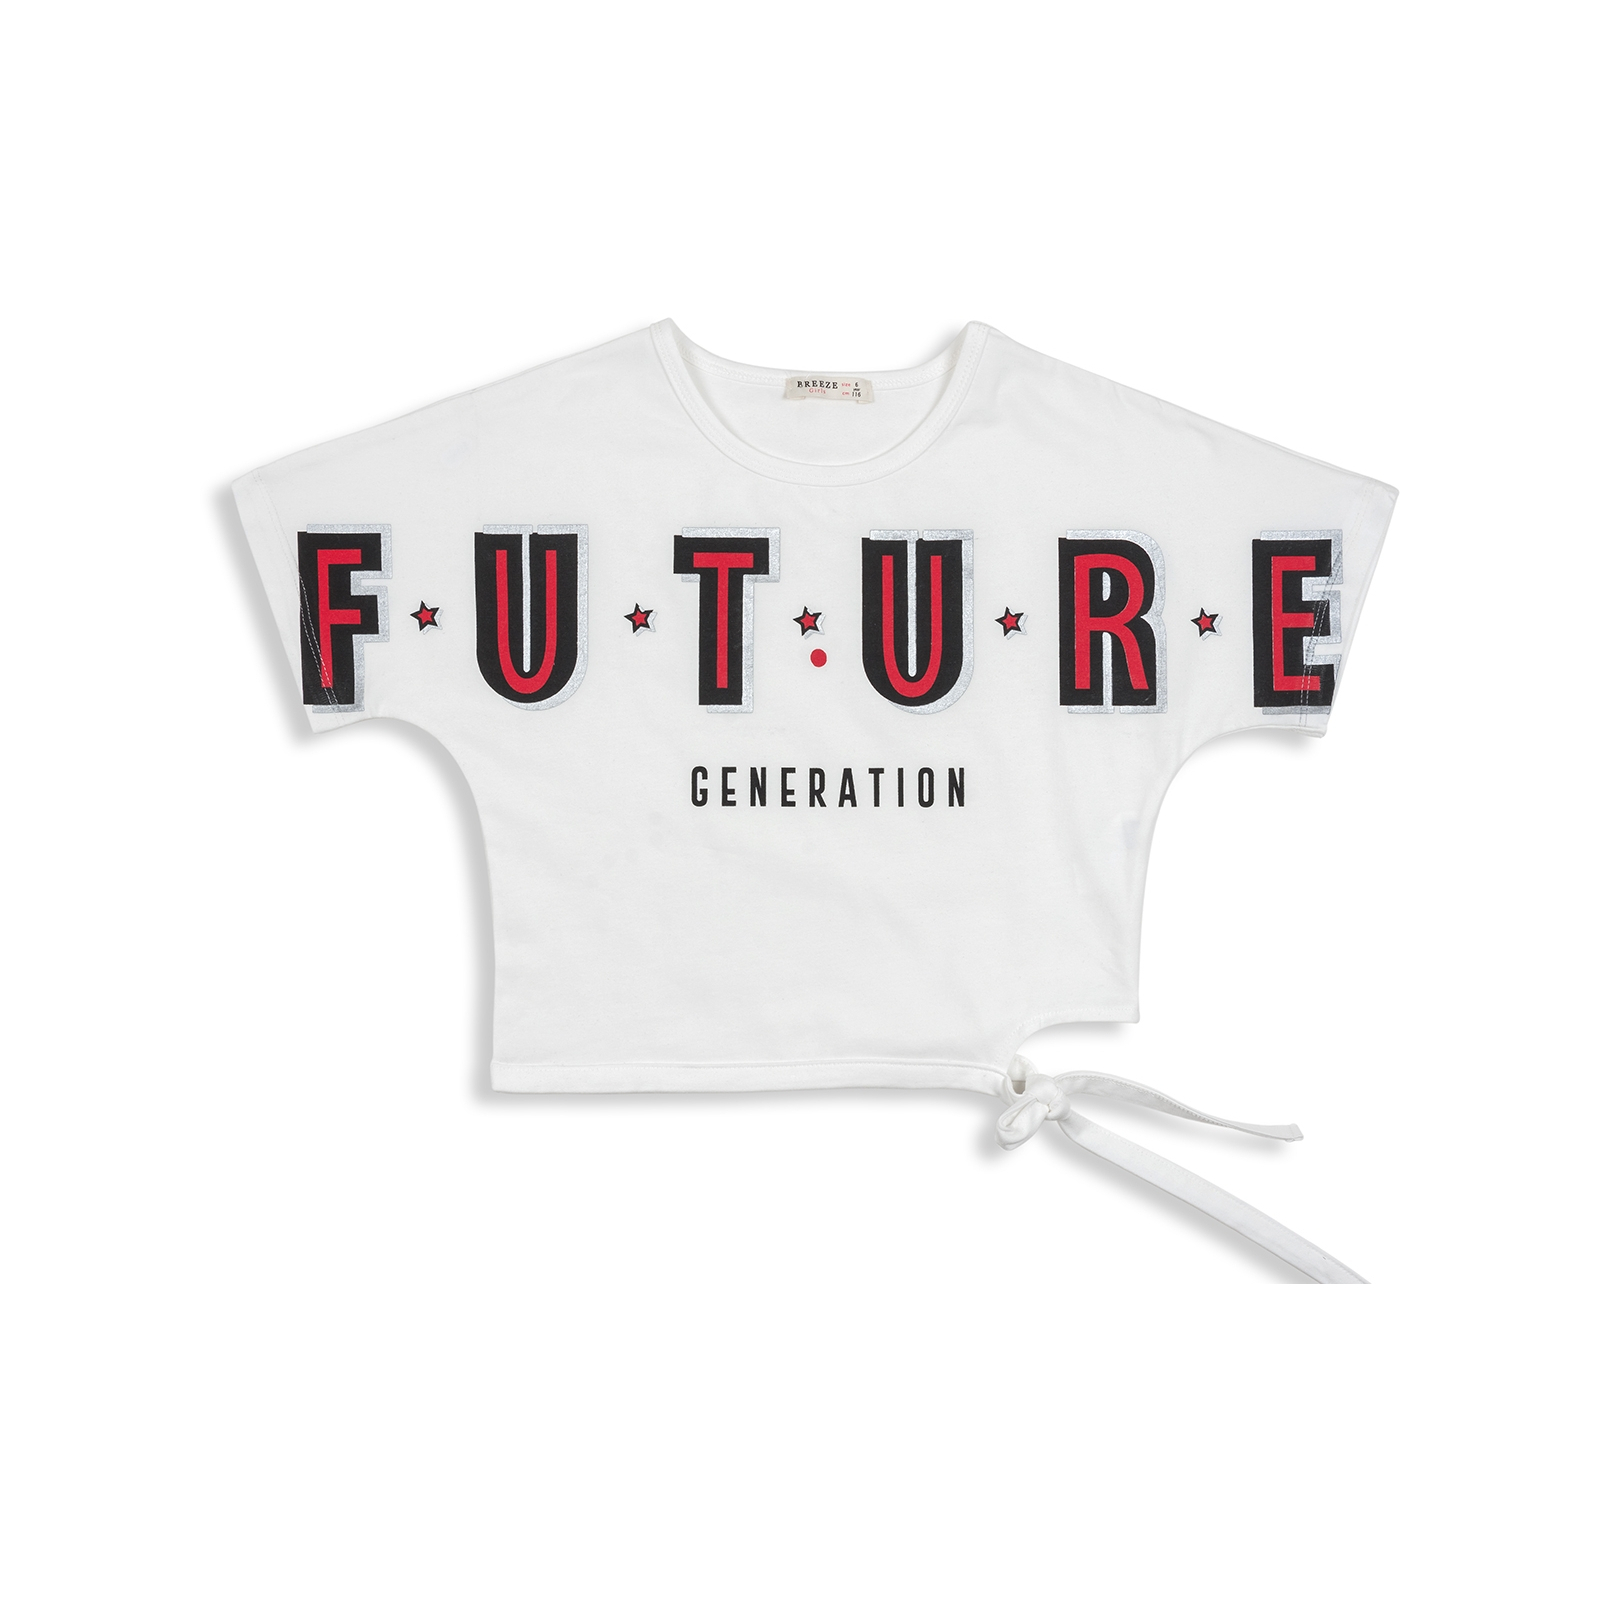 Набор детской одежды Breeze "FUTURE" (12864-116G-whiteblack) изображение 2